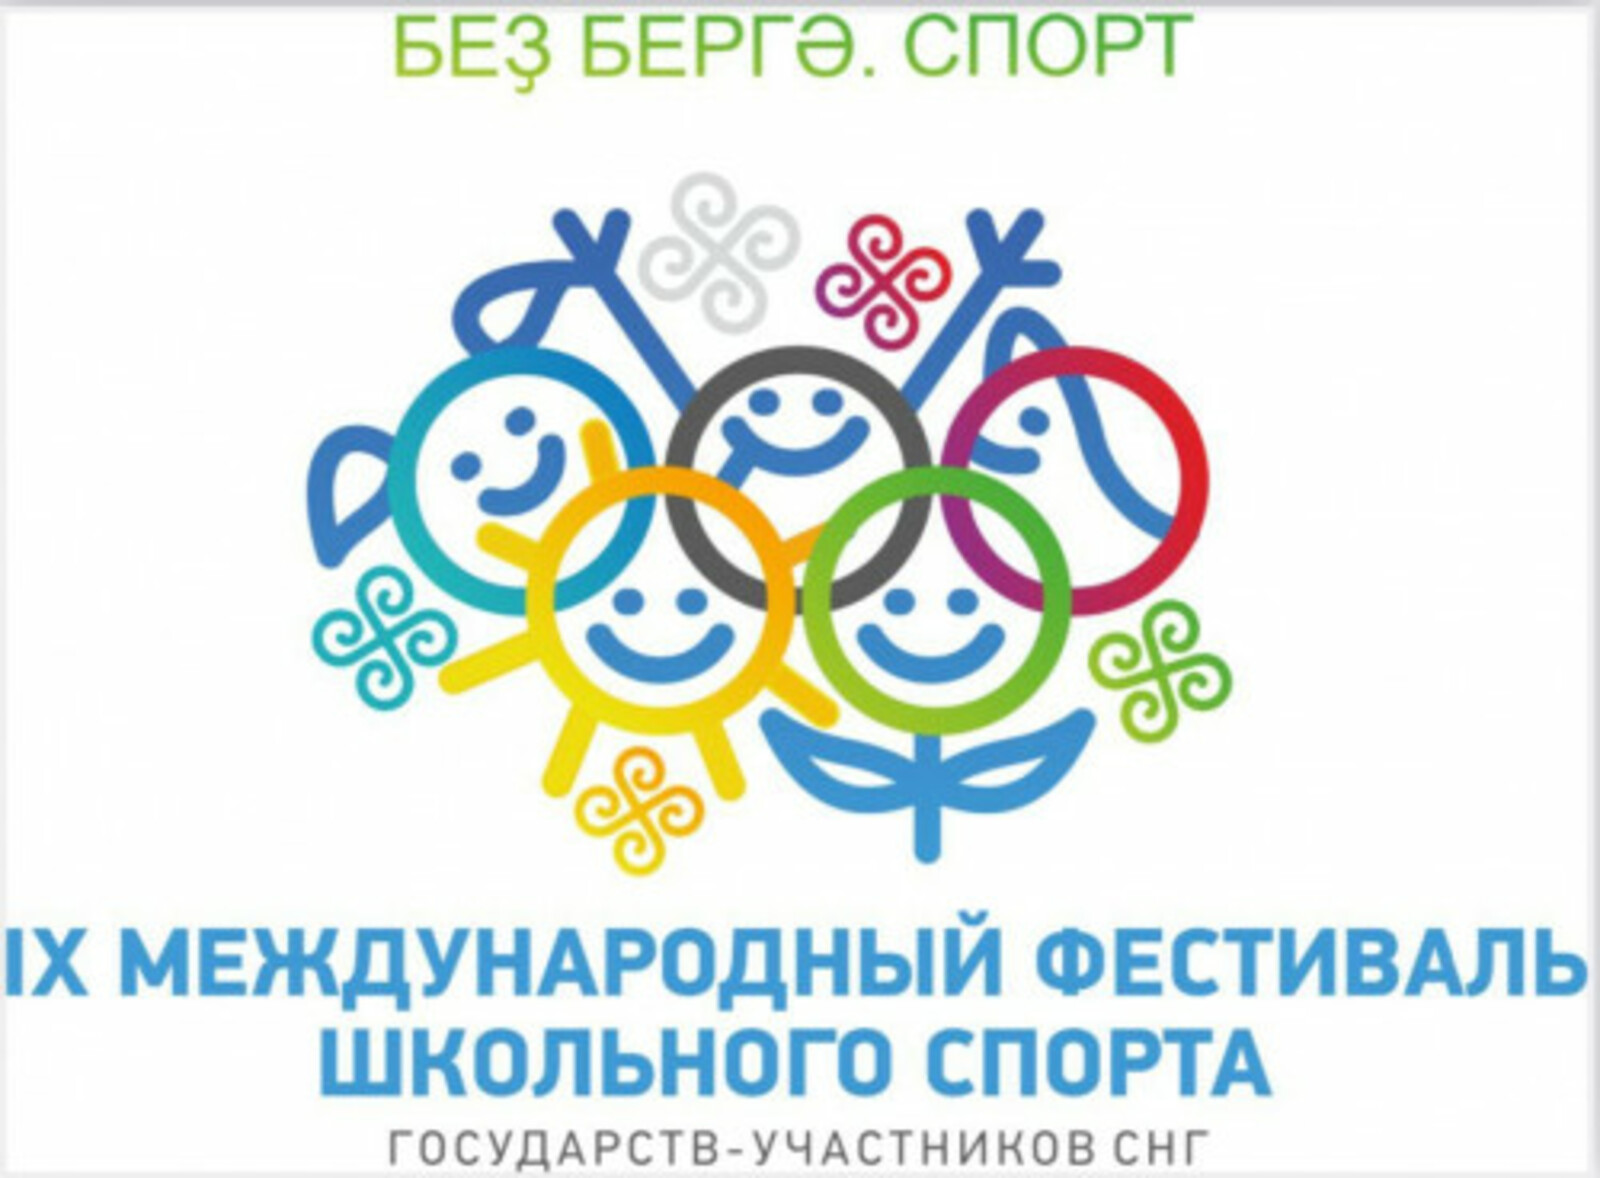 Впервые Башкортостан примет  Международный фестиваль школьного спорта государств-участников СНГ в Уфе